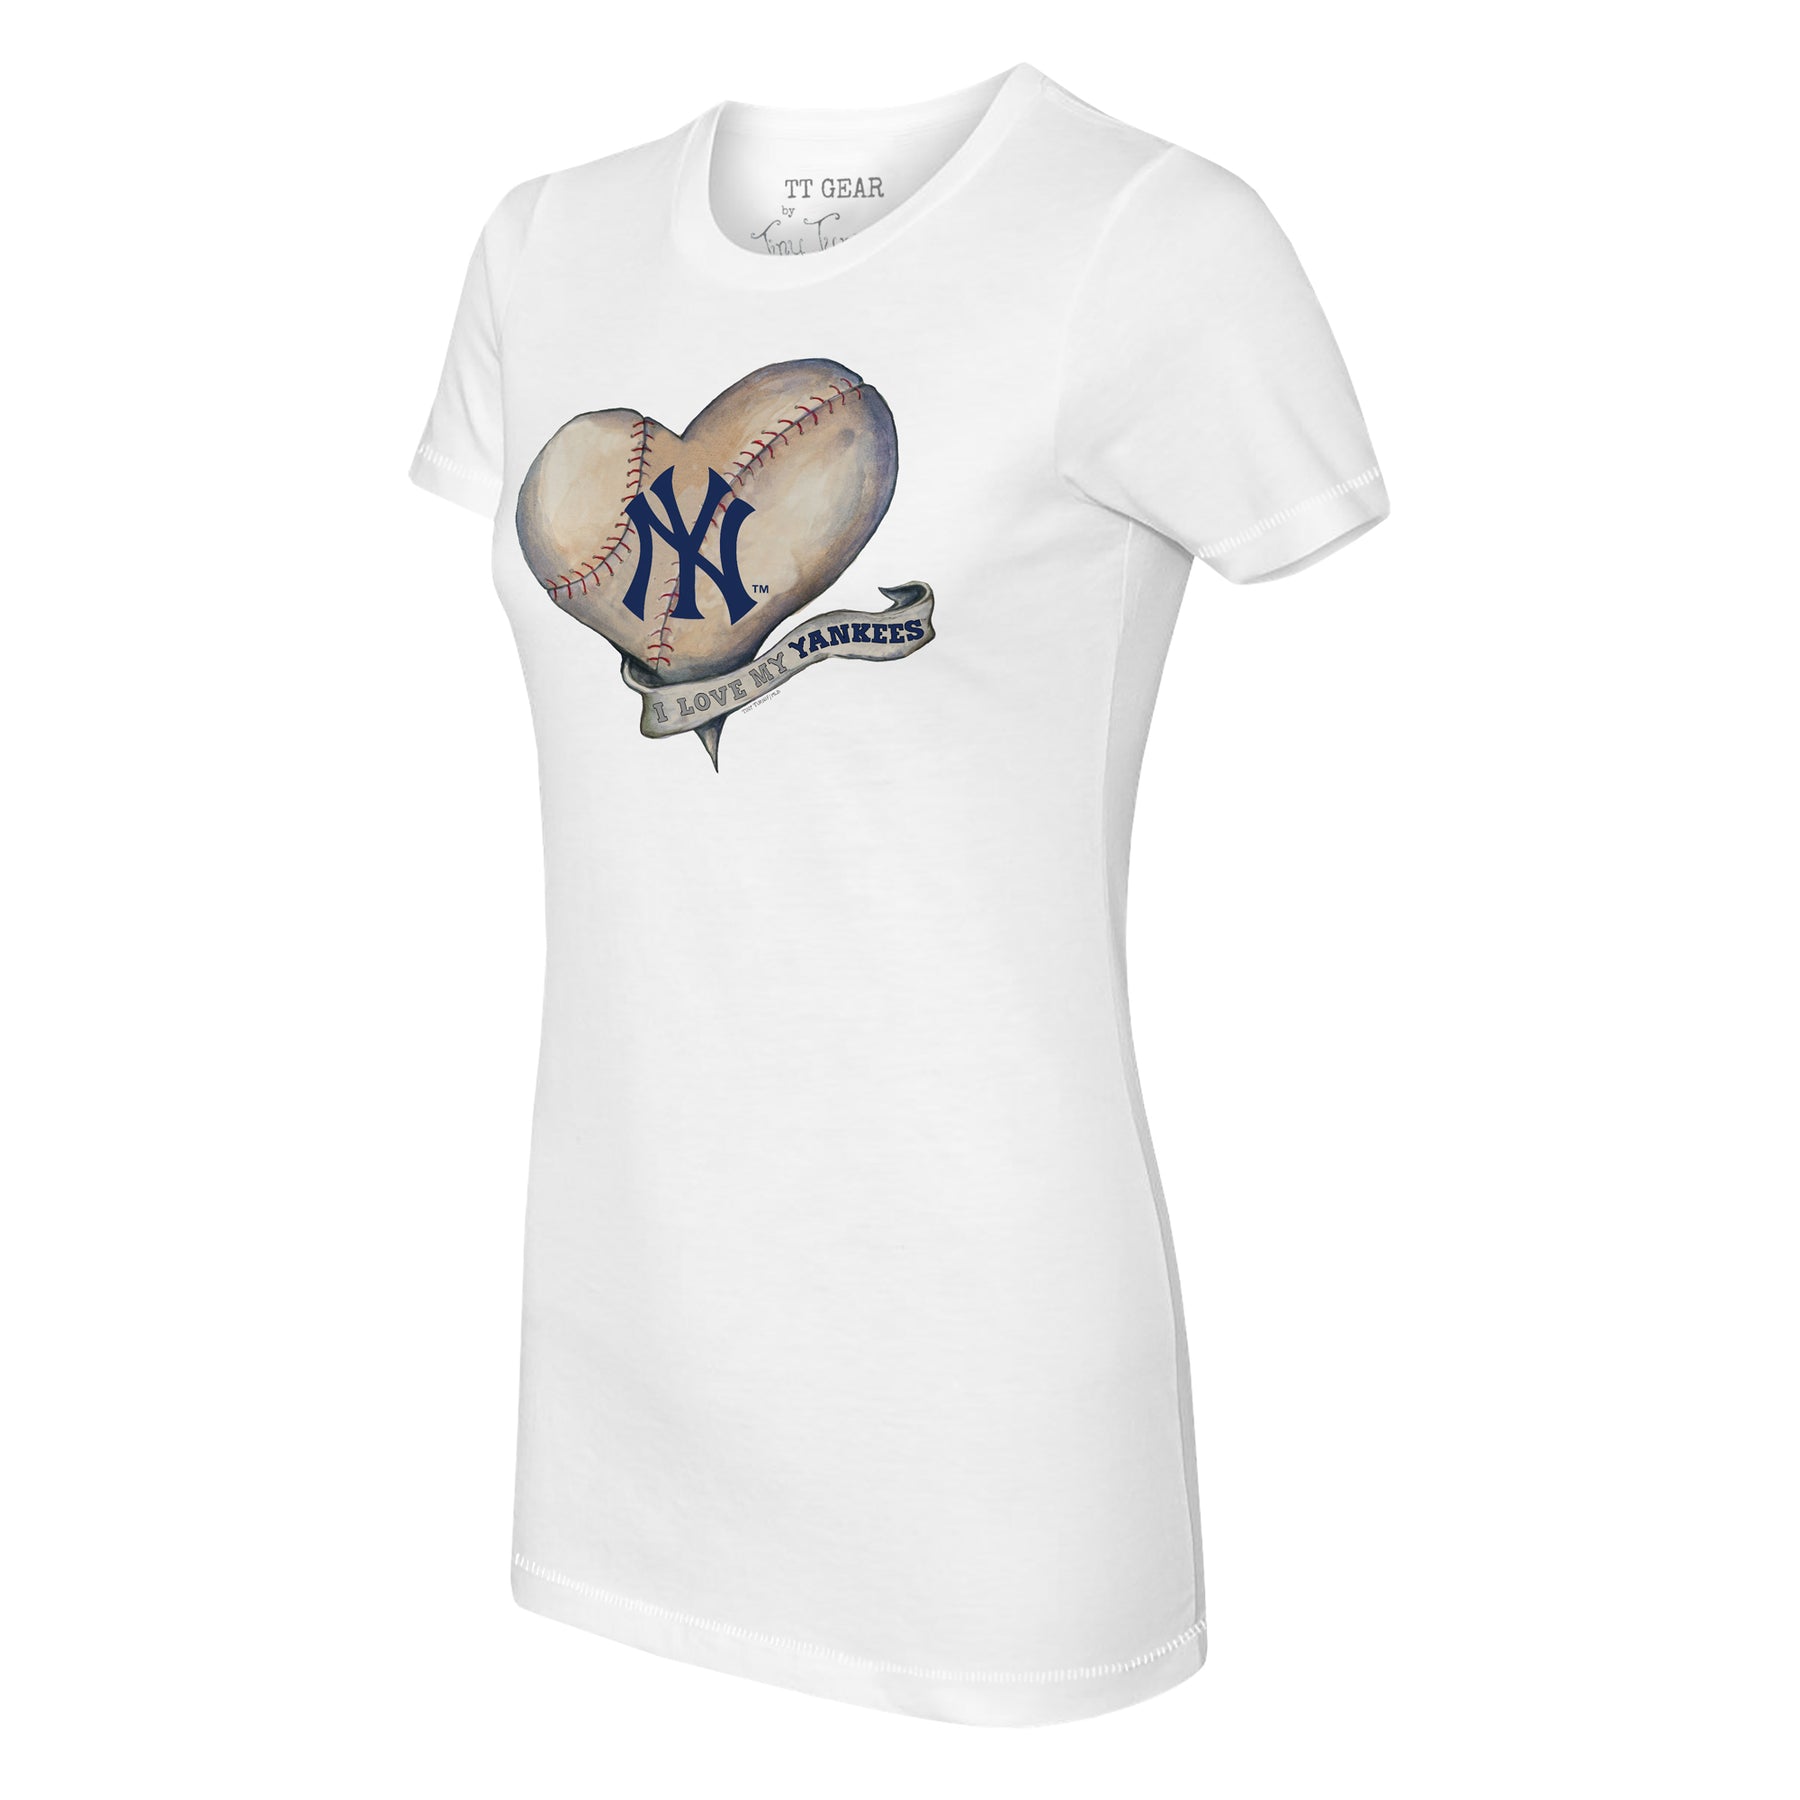 Toddler Tiny Turnip White New York Yankees Hot Bats T-Shirt